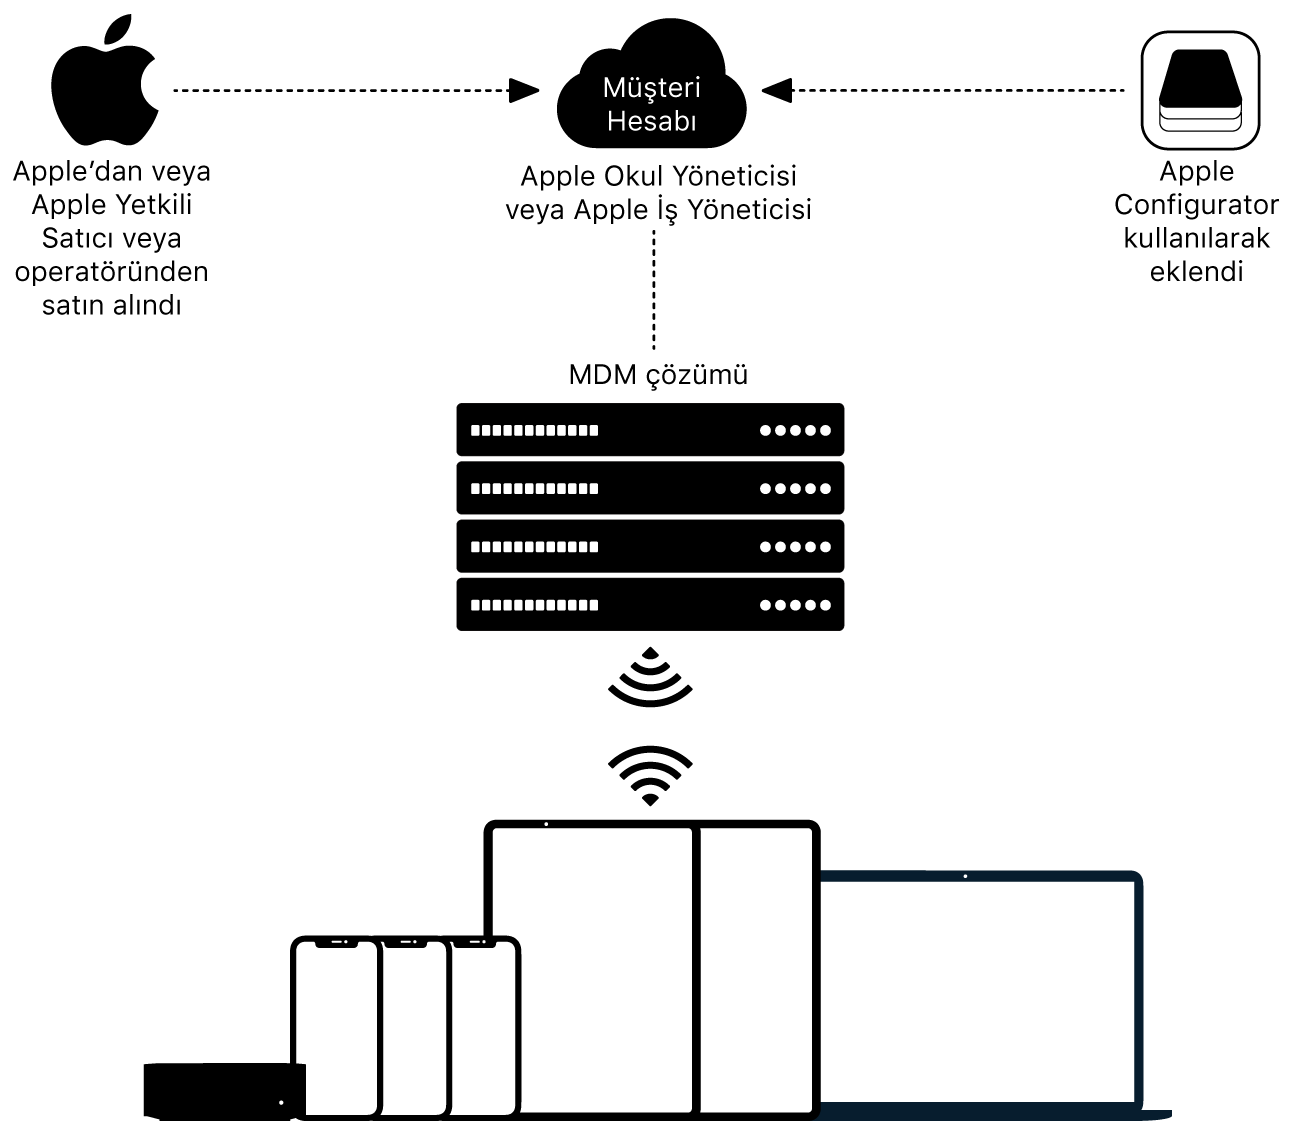 Aygıtların Apple Okul Yönetimi’ne veya Apple İşletme Yönetimi’ne nasıl atandığını gösteren diyagram.